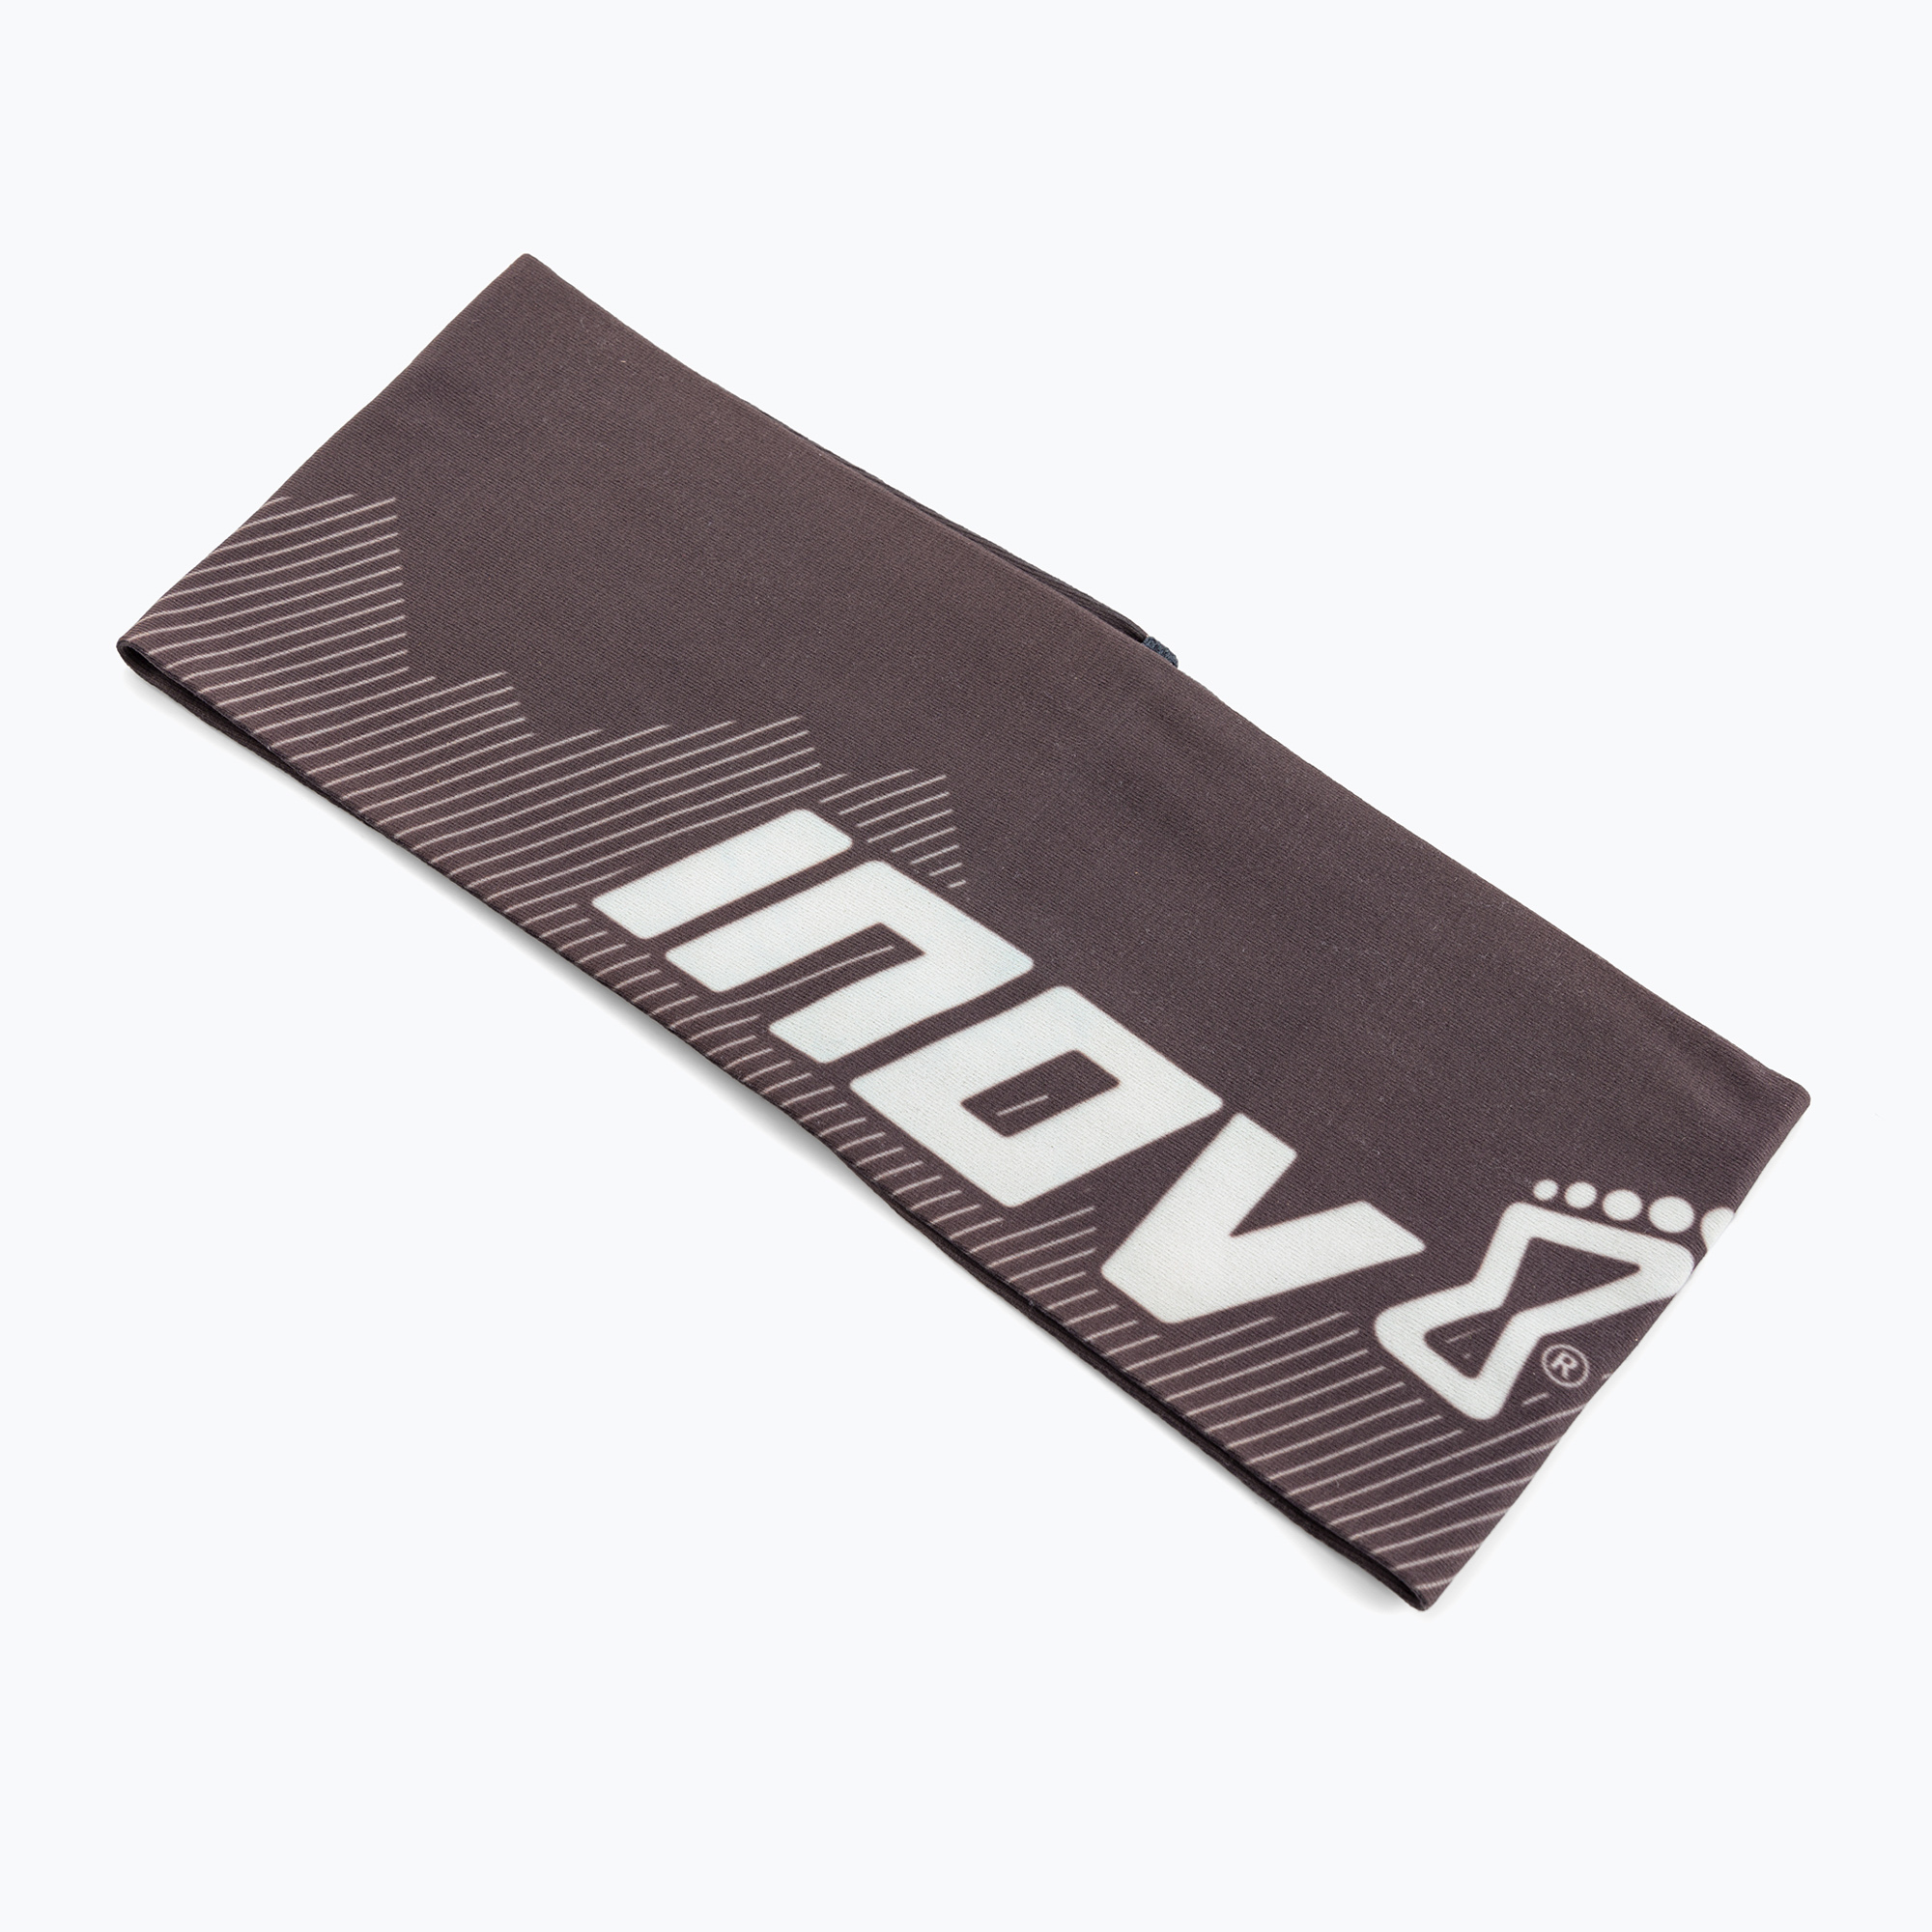 Inov-8 Race Elite™ Headband negru/alb pentru alergare brățară de alergare